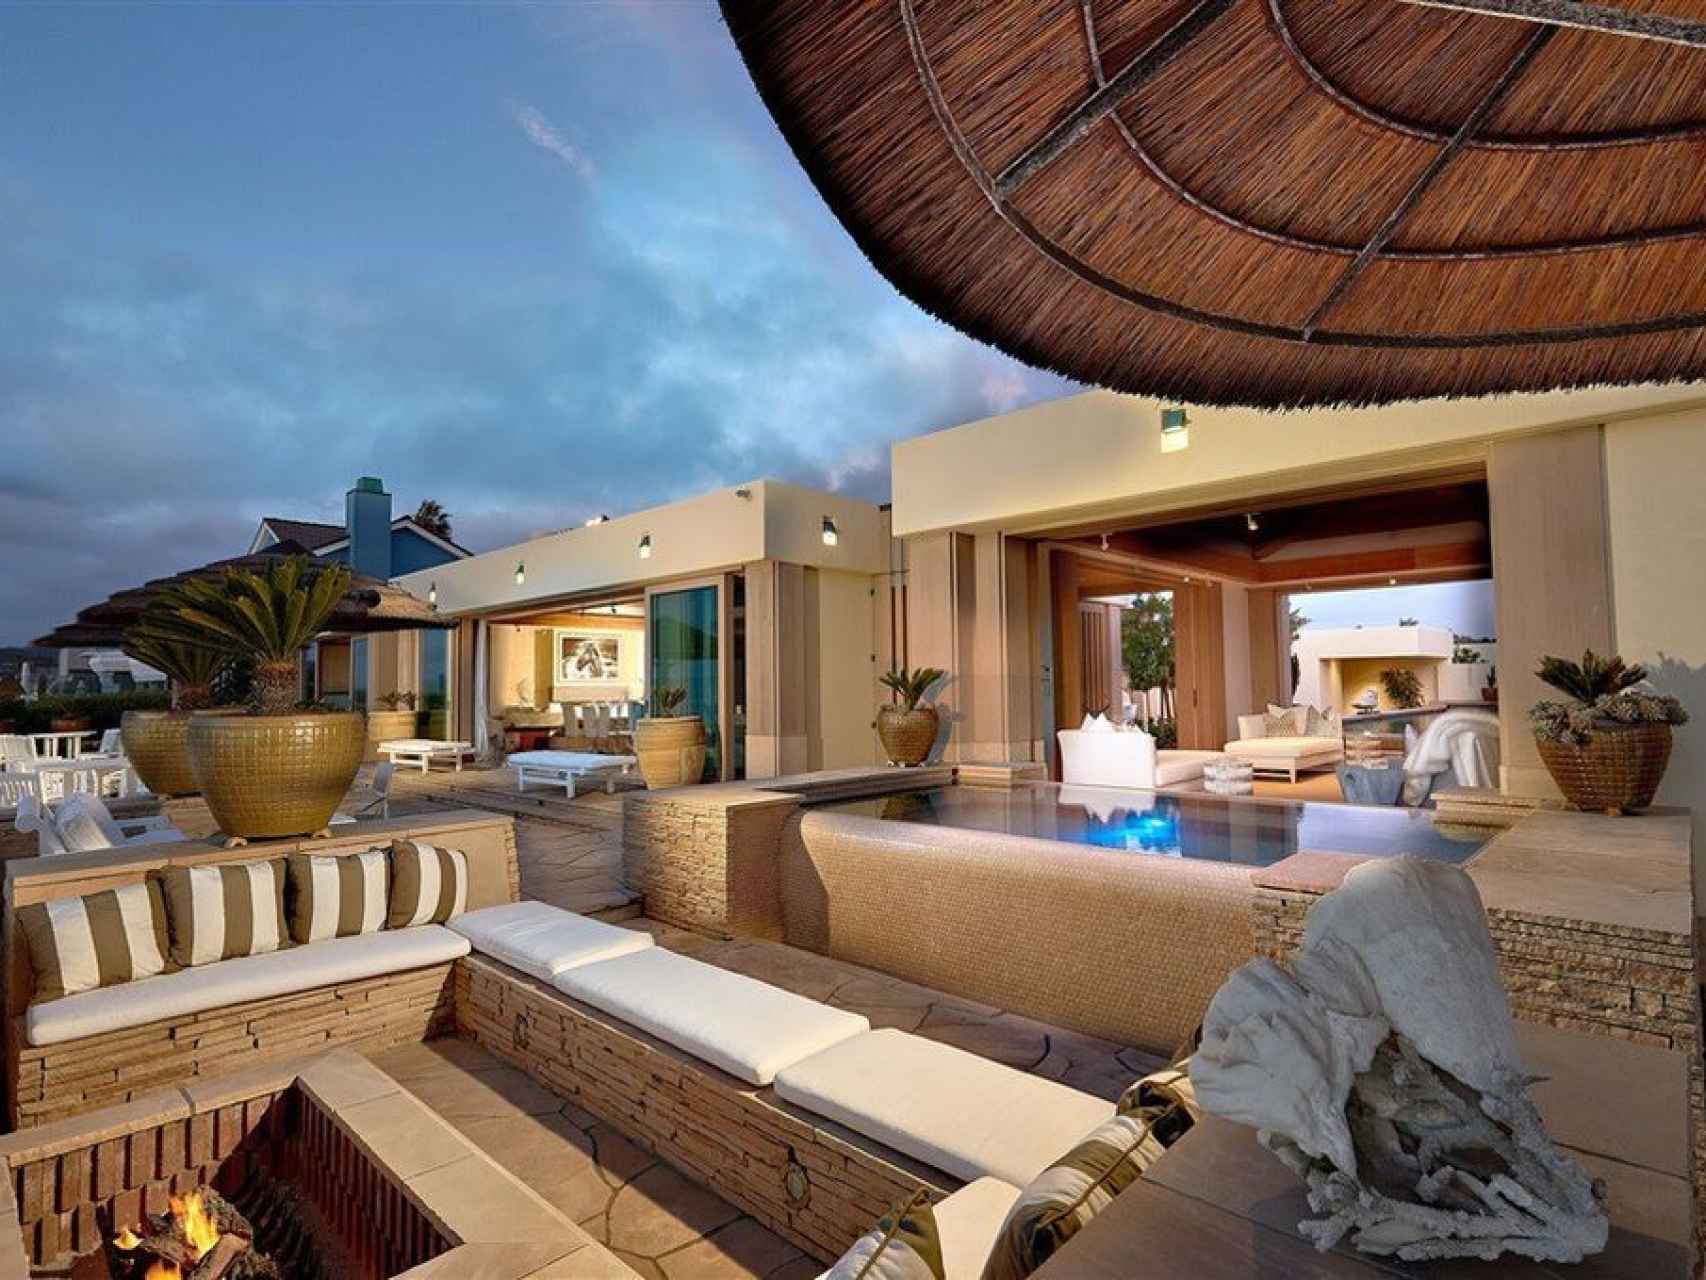 La terraza de la casa de Bill y Melinda Gates es ideal para disfrutar de tiempo al aire libre.